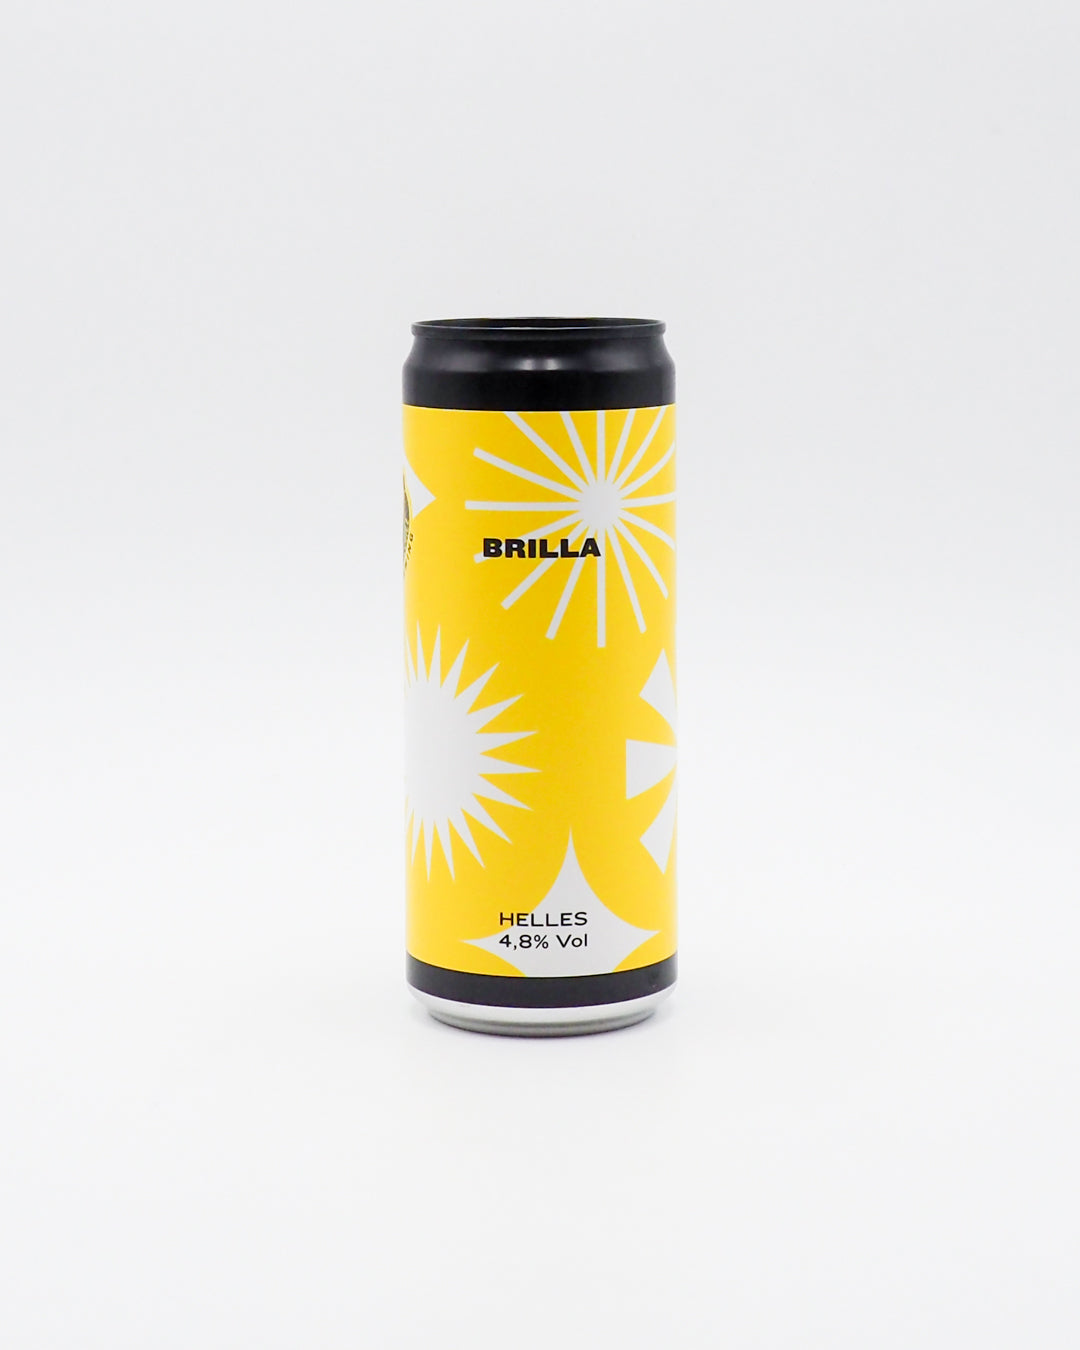 birra-brilla-helles-jungle-juice-brewery-4-8-33cl